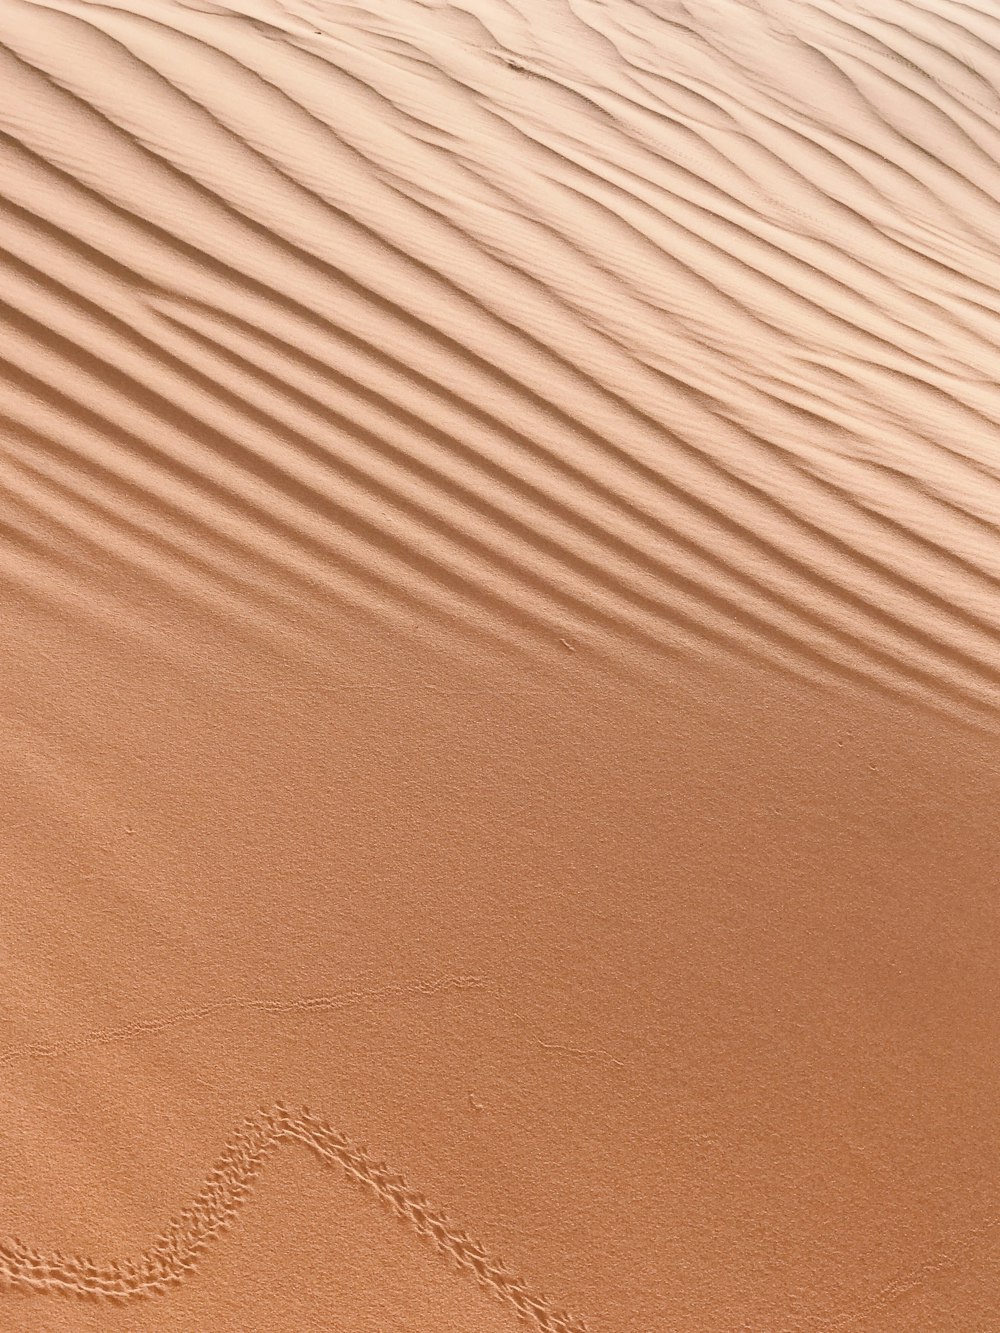 L’image d’un cœur dessiné dans le sable